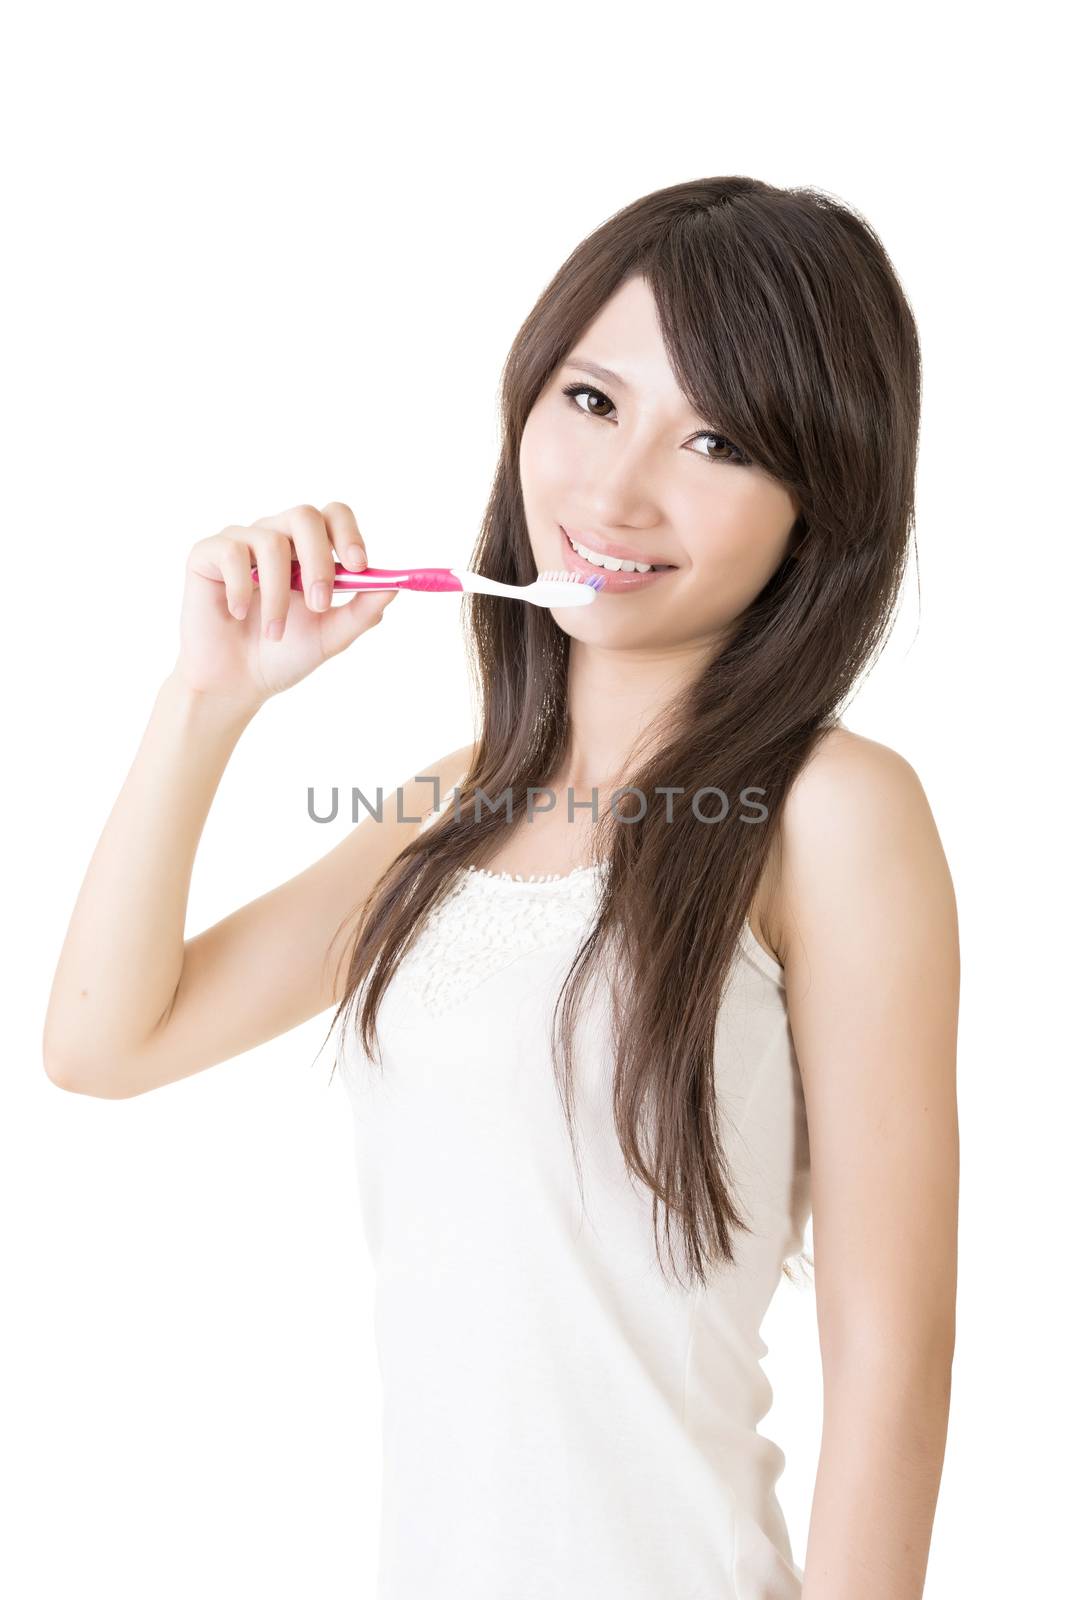 Attractive asian woman brushing teeth by elwynn